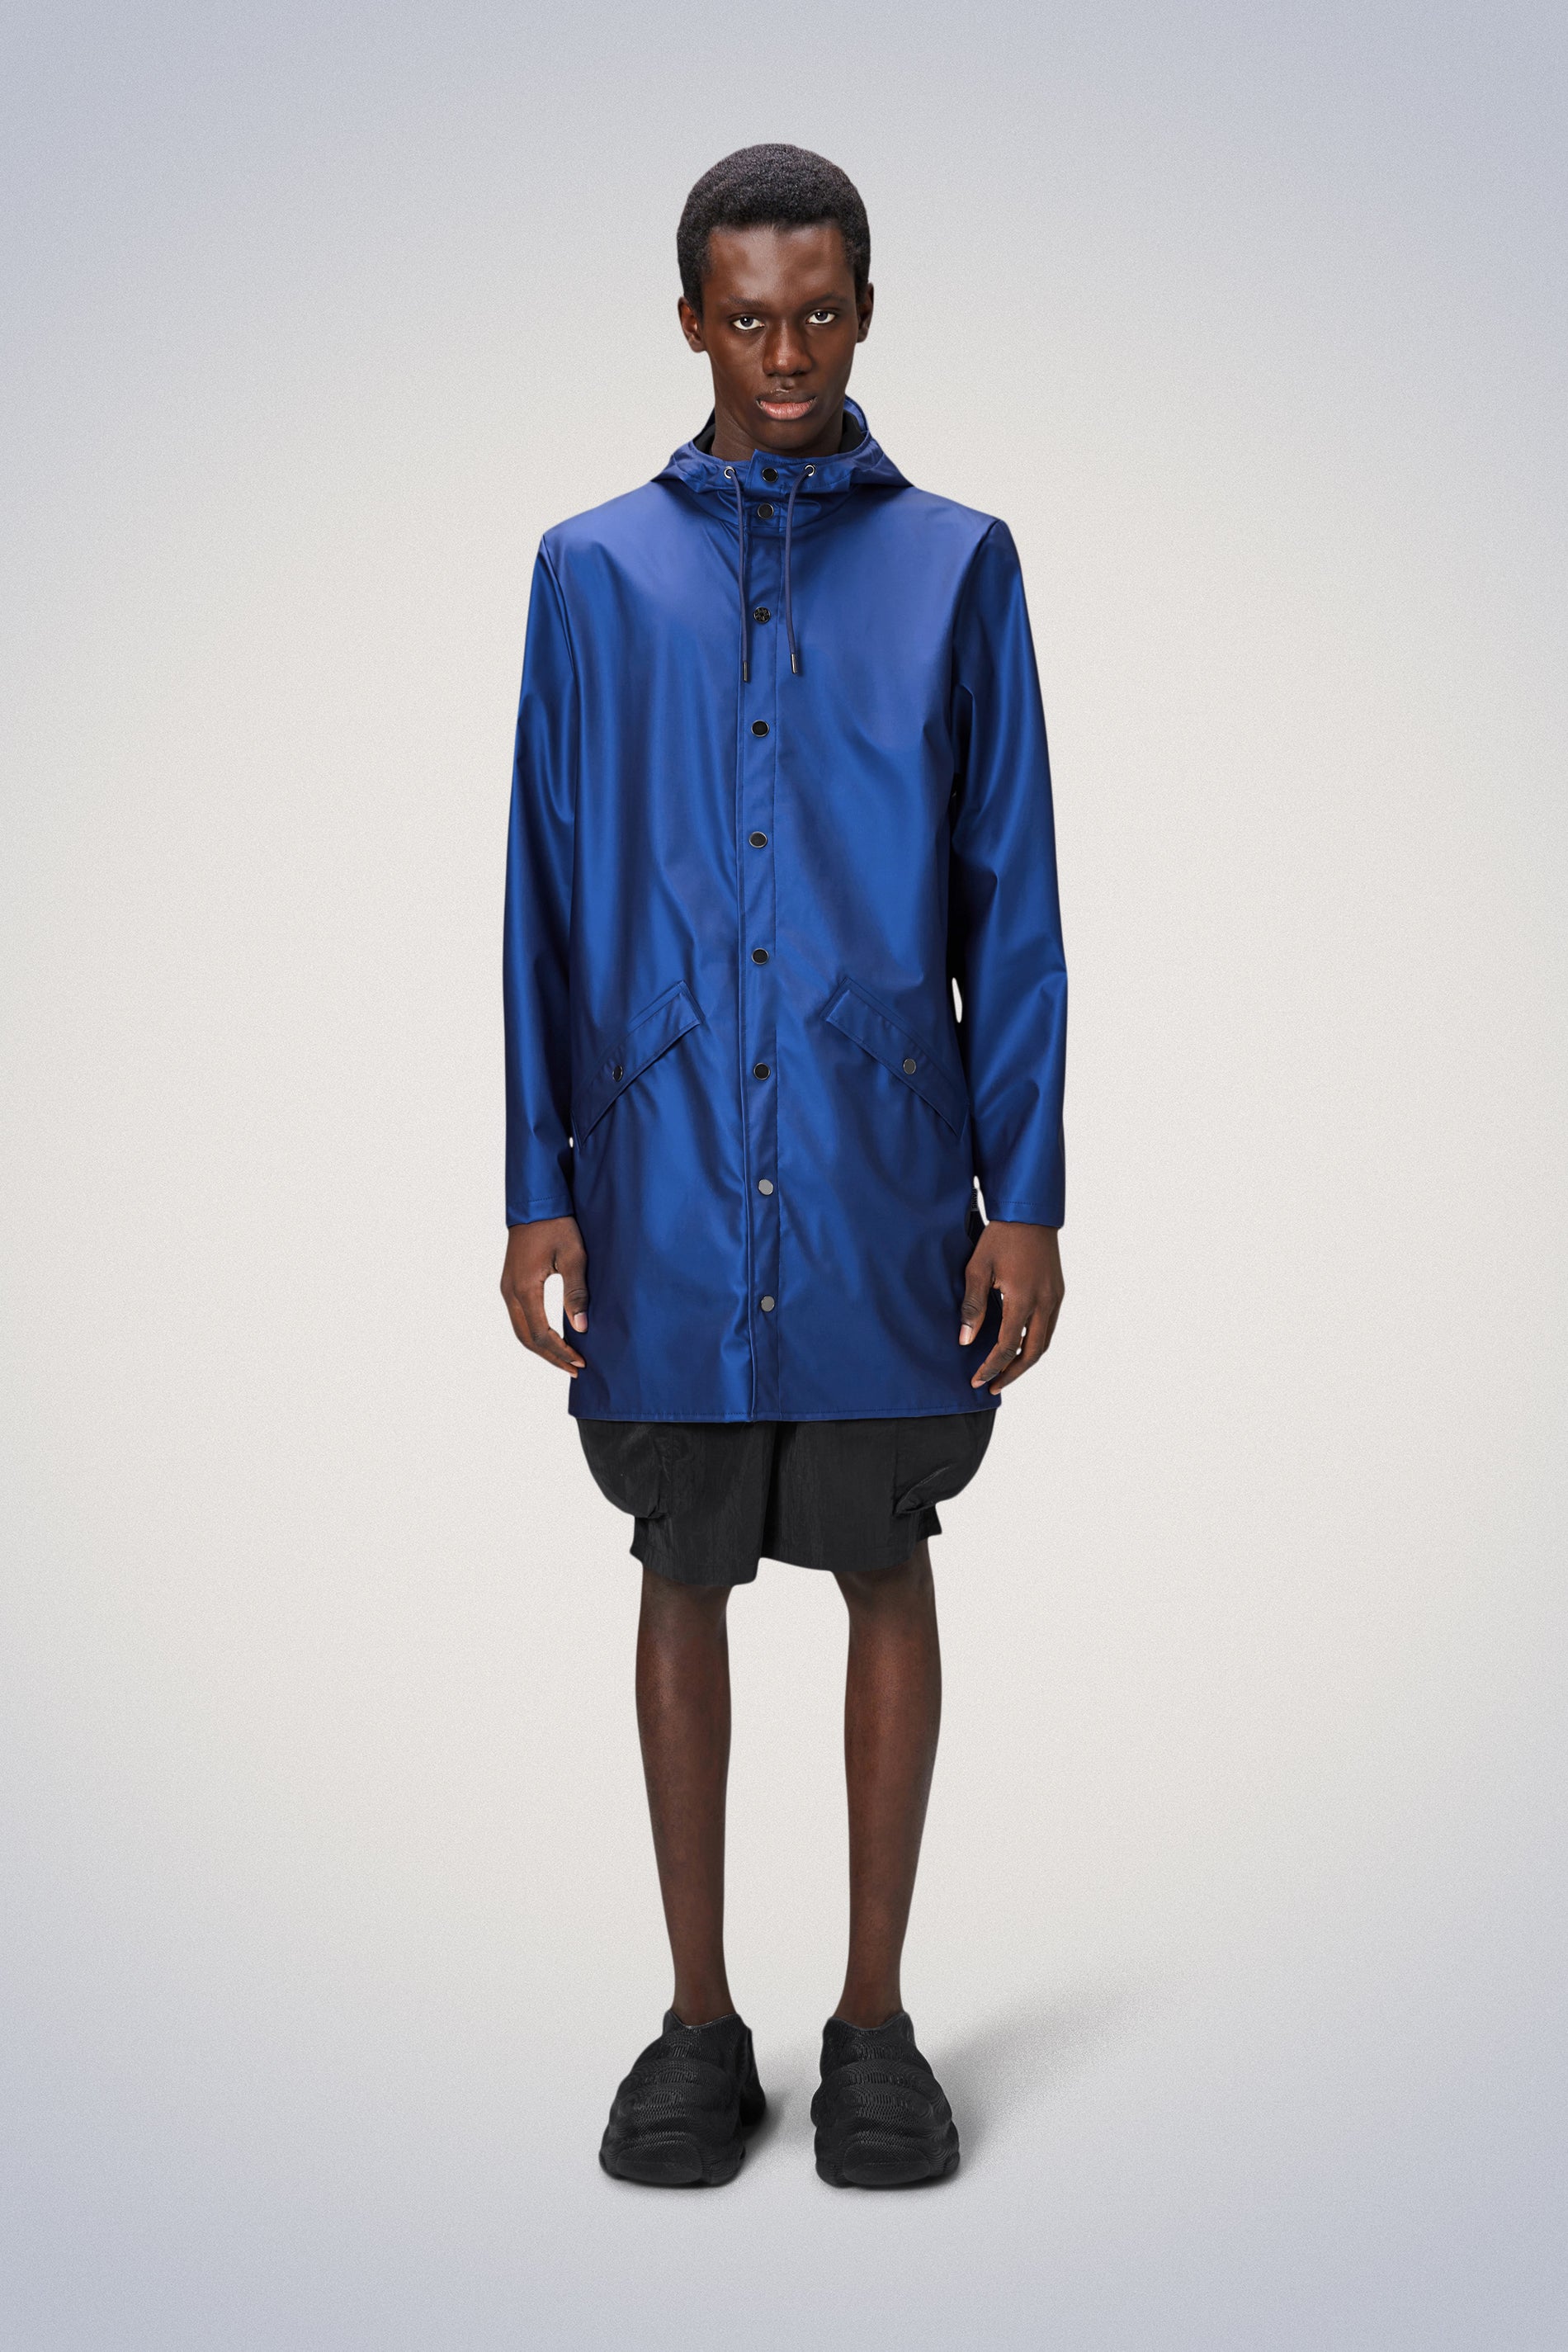 TaihuaXin Rain Suits for Men, Rain Gear Waterproof for Fishing